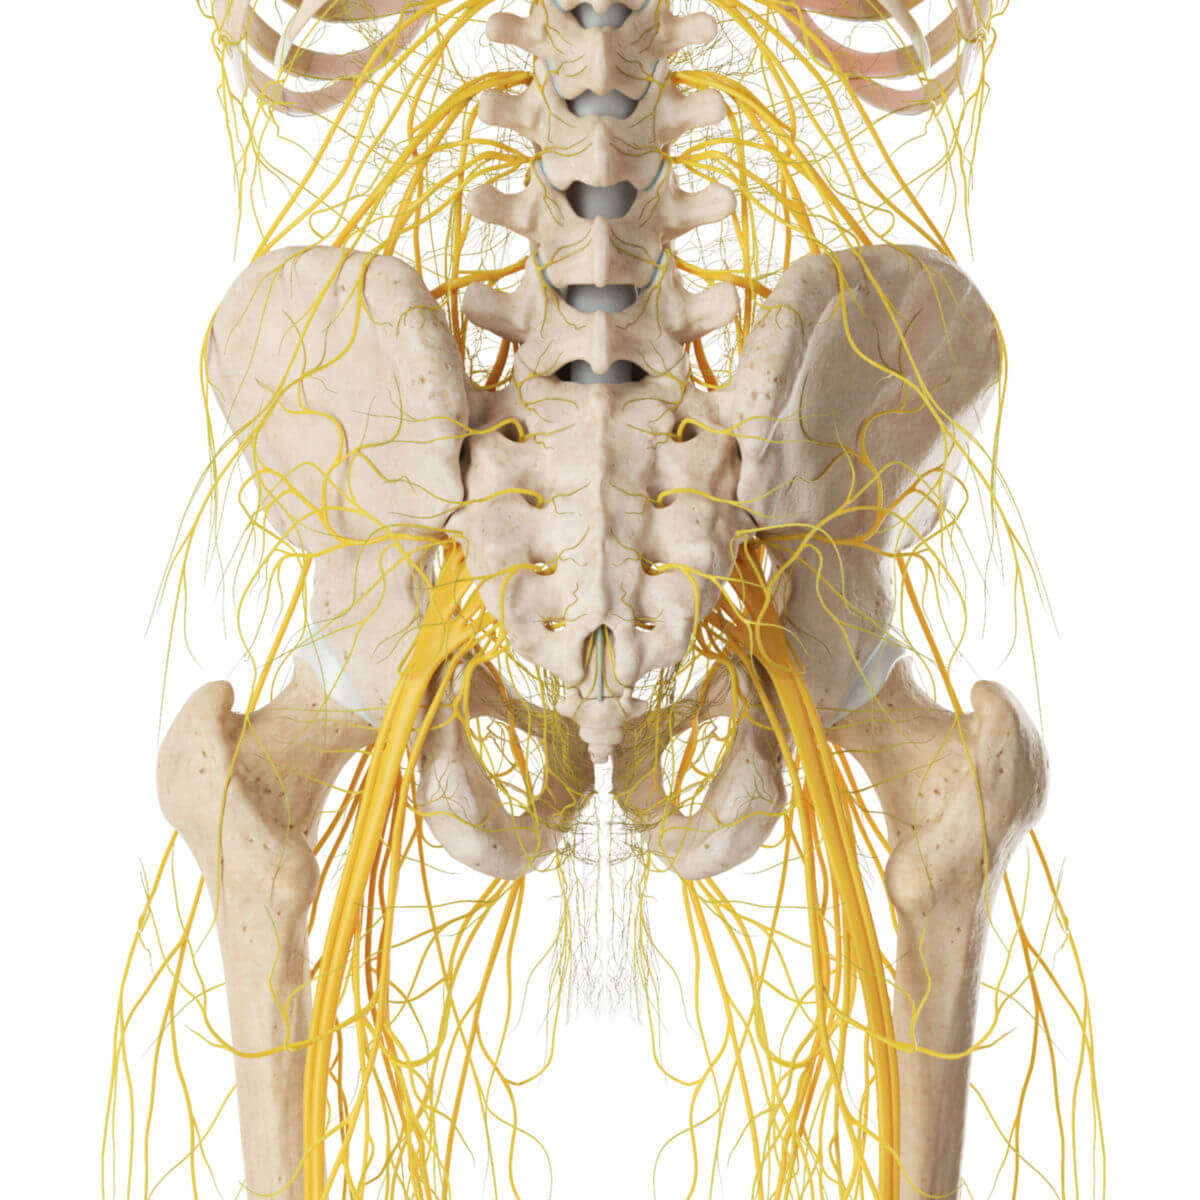 Nervenverläufe der Beckenregion (von dorsal)